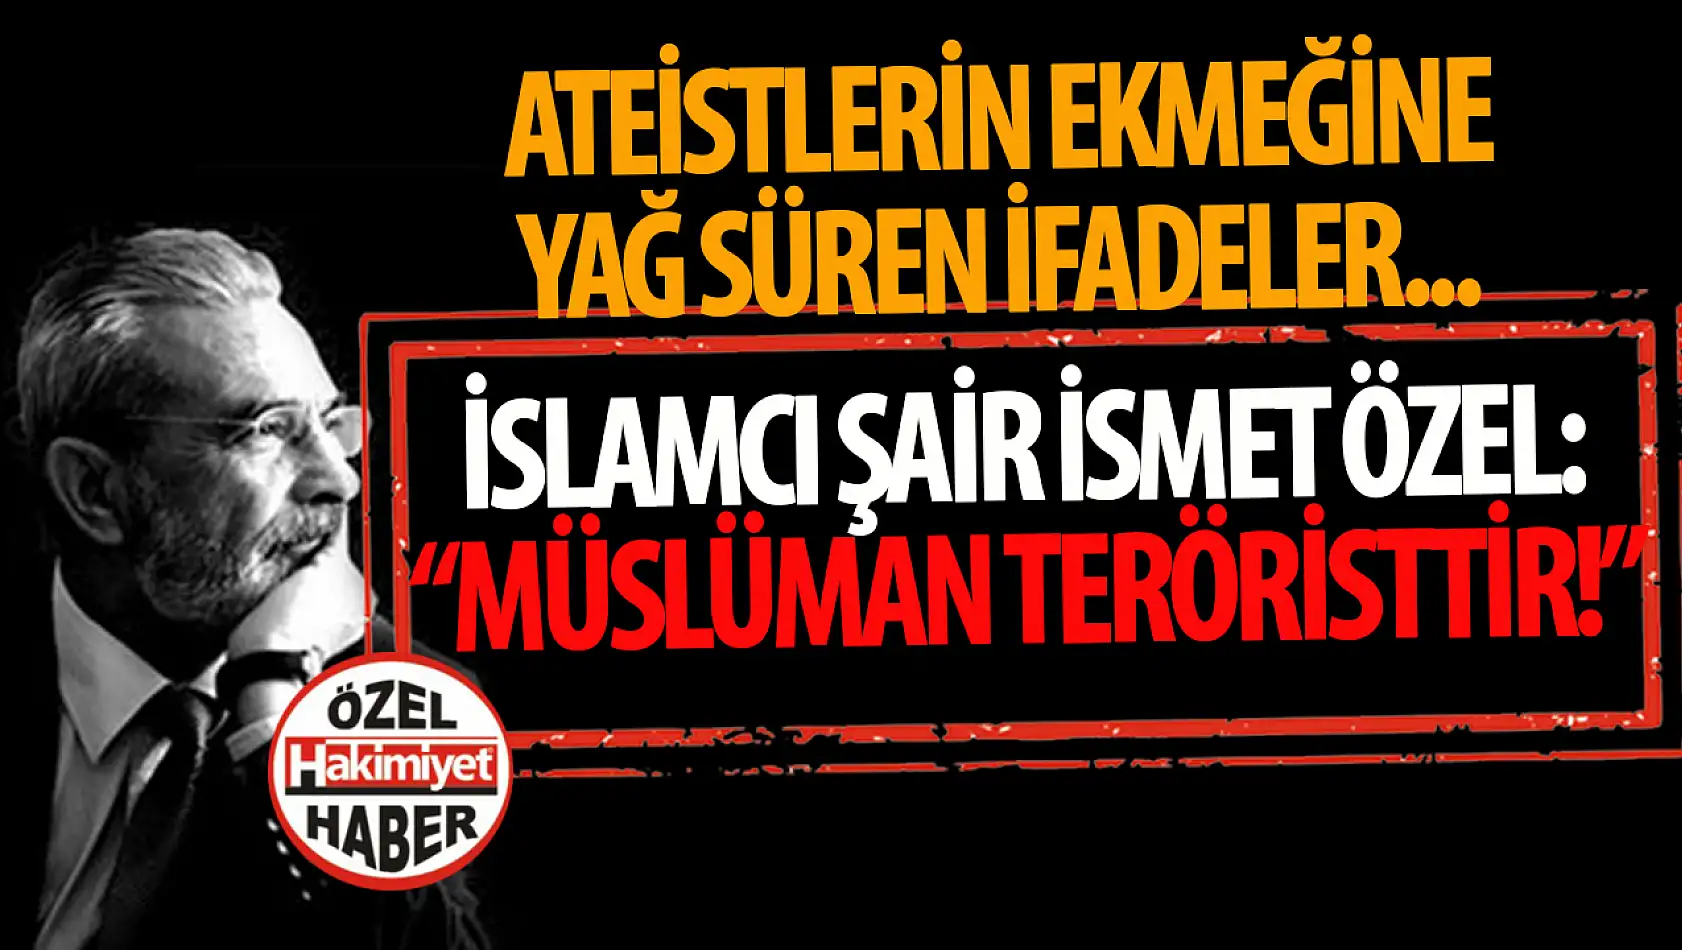 İsmet Özel'in Kontroversiyel Açıklamaları Yeniden Gündemde: Müslüman Teröristtir!